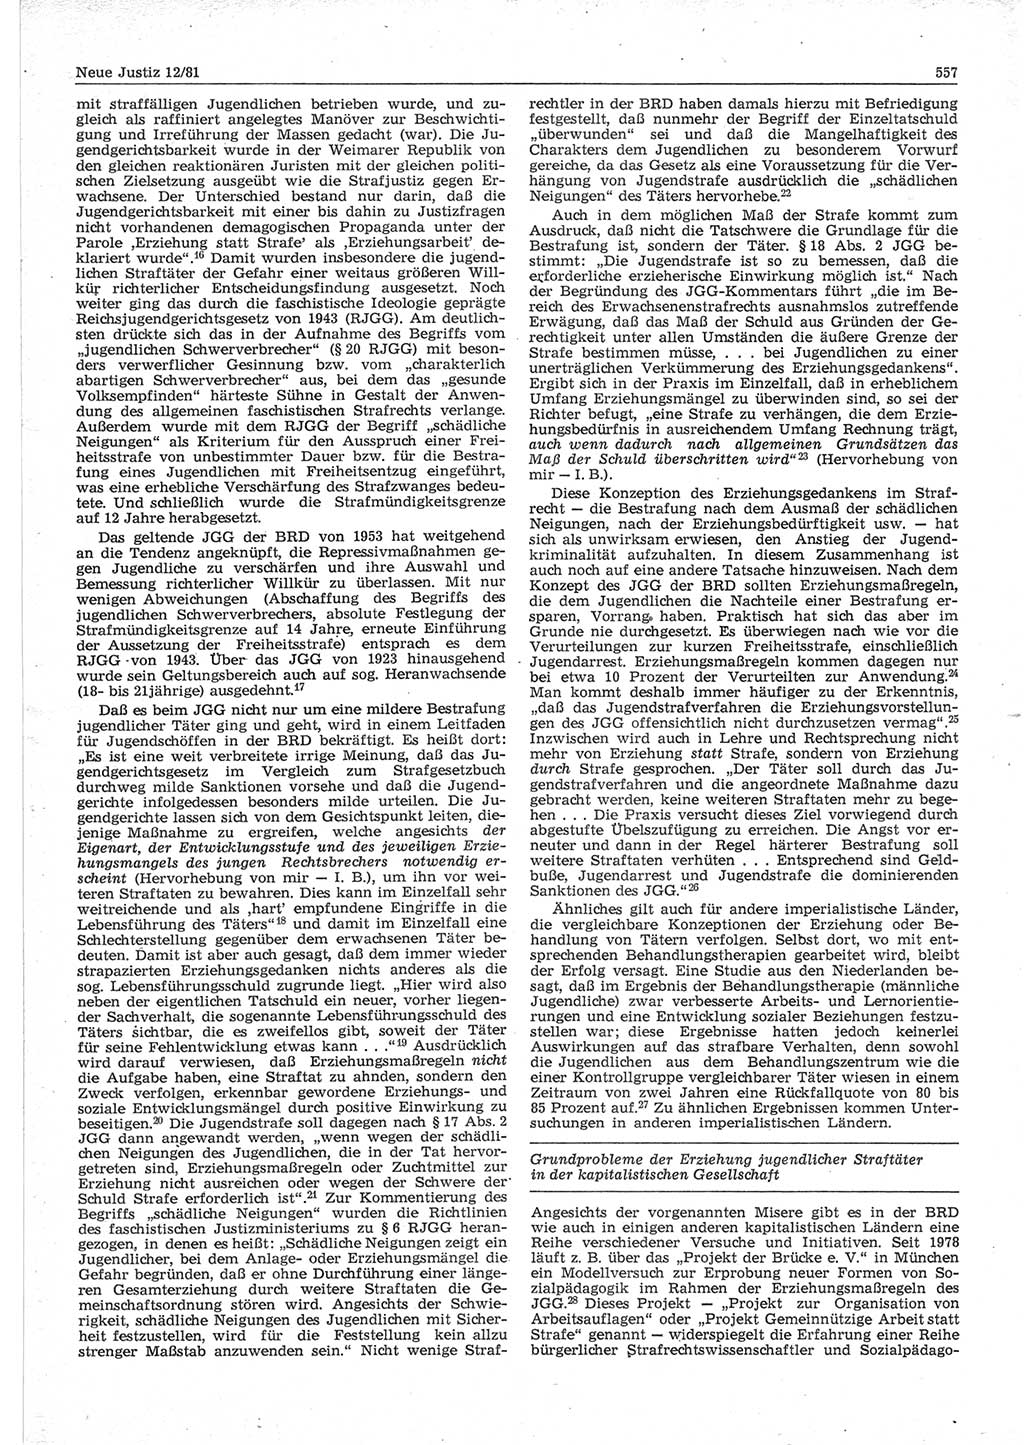 Neue Justiz (NJ), Zeitschrift für sozialistisches Recht und Gesetzlichkeit [Deutsche Demokratische Republik (DDR)], 35. Jahrgang 1981, Seite 557 (NJ DDR 1981, S. 557)